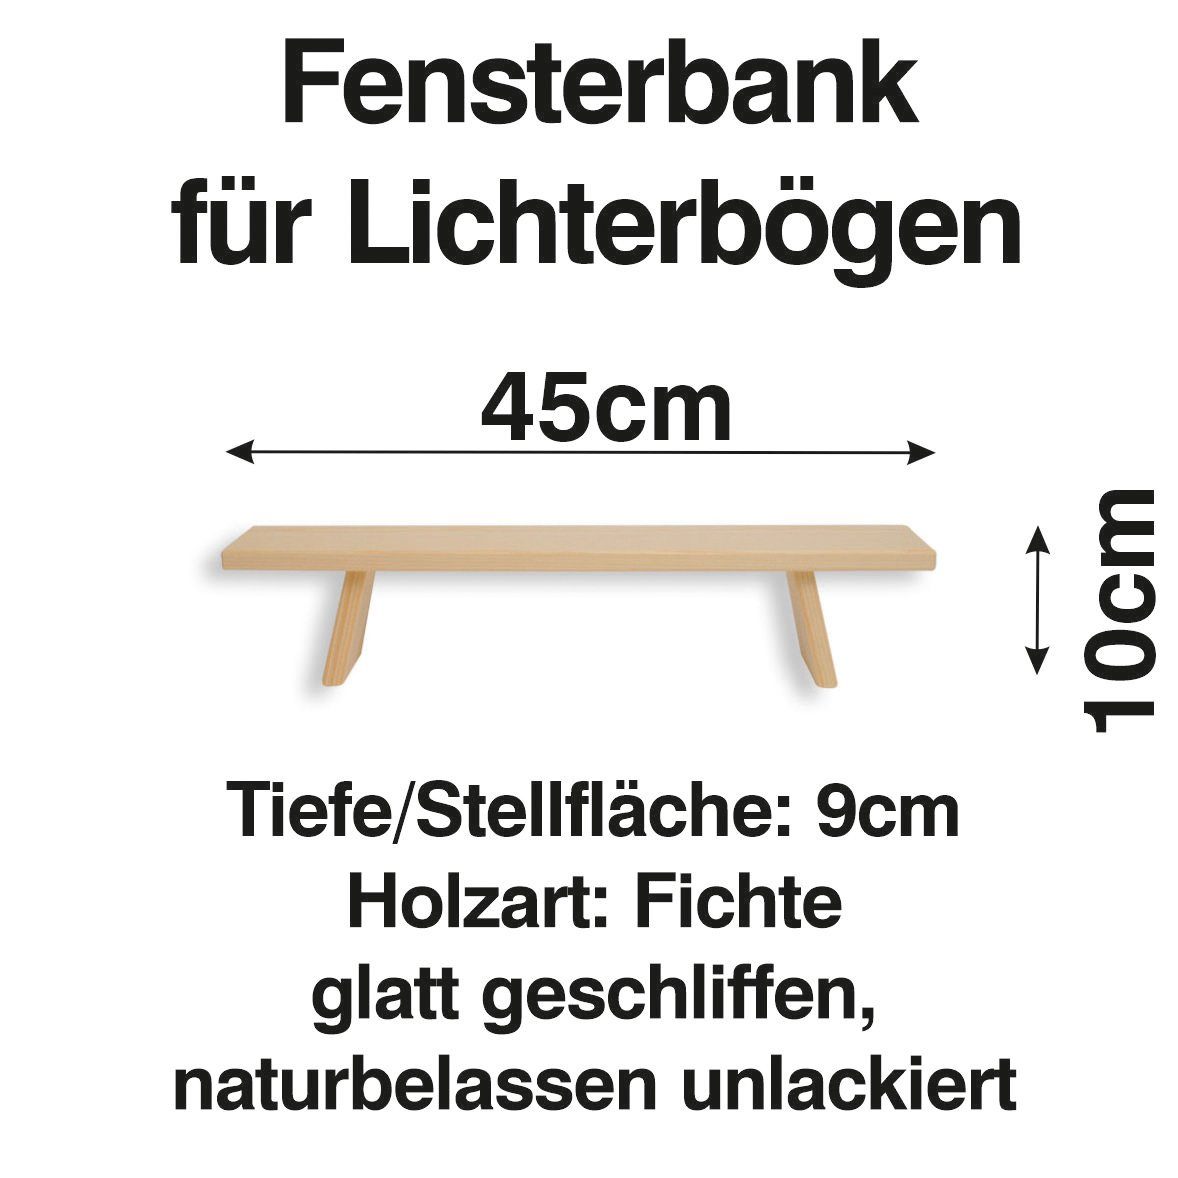 Schenk Holzkunst Schwibbogen-Fensterbank Schwibbogen Lichterbogen 45 cm Erhöhung Fenst Bank